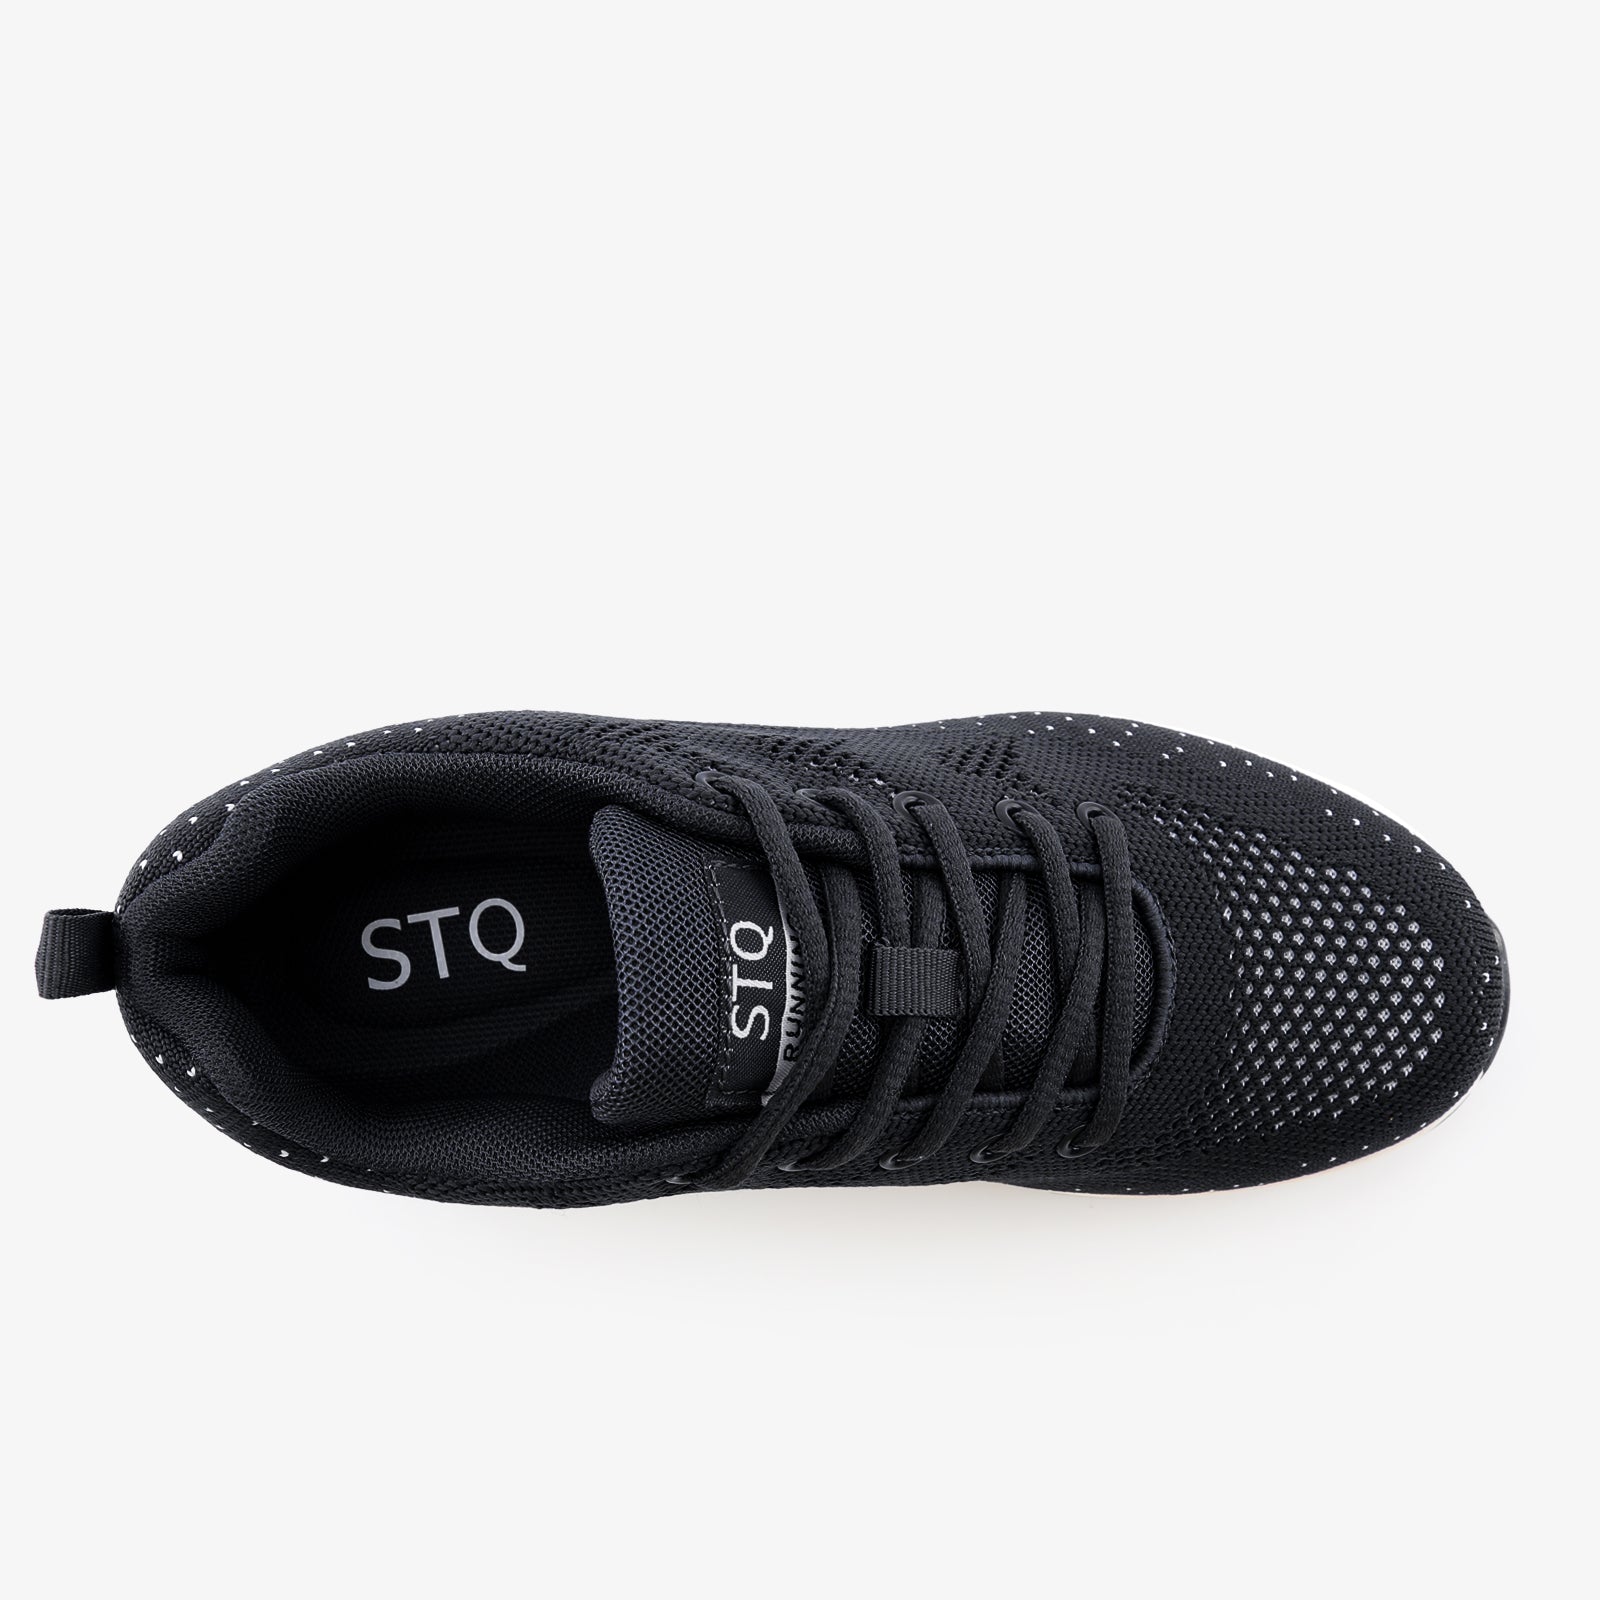 stq-fashion-sneakers-air-cushion-running-view